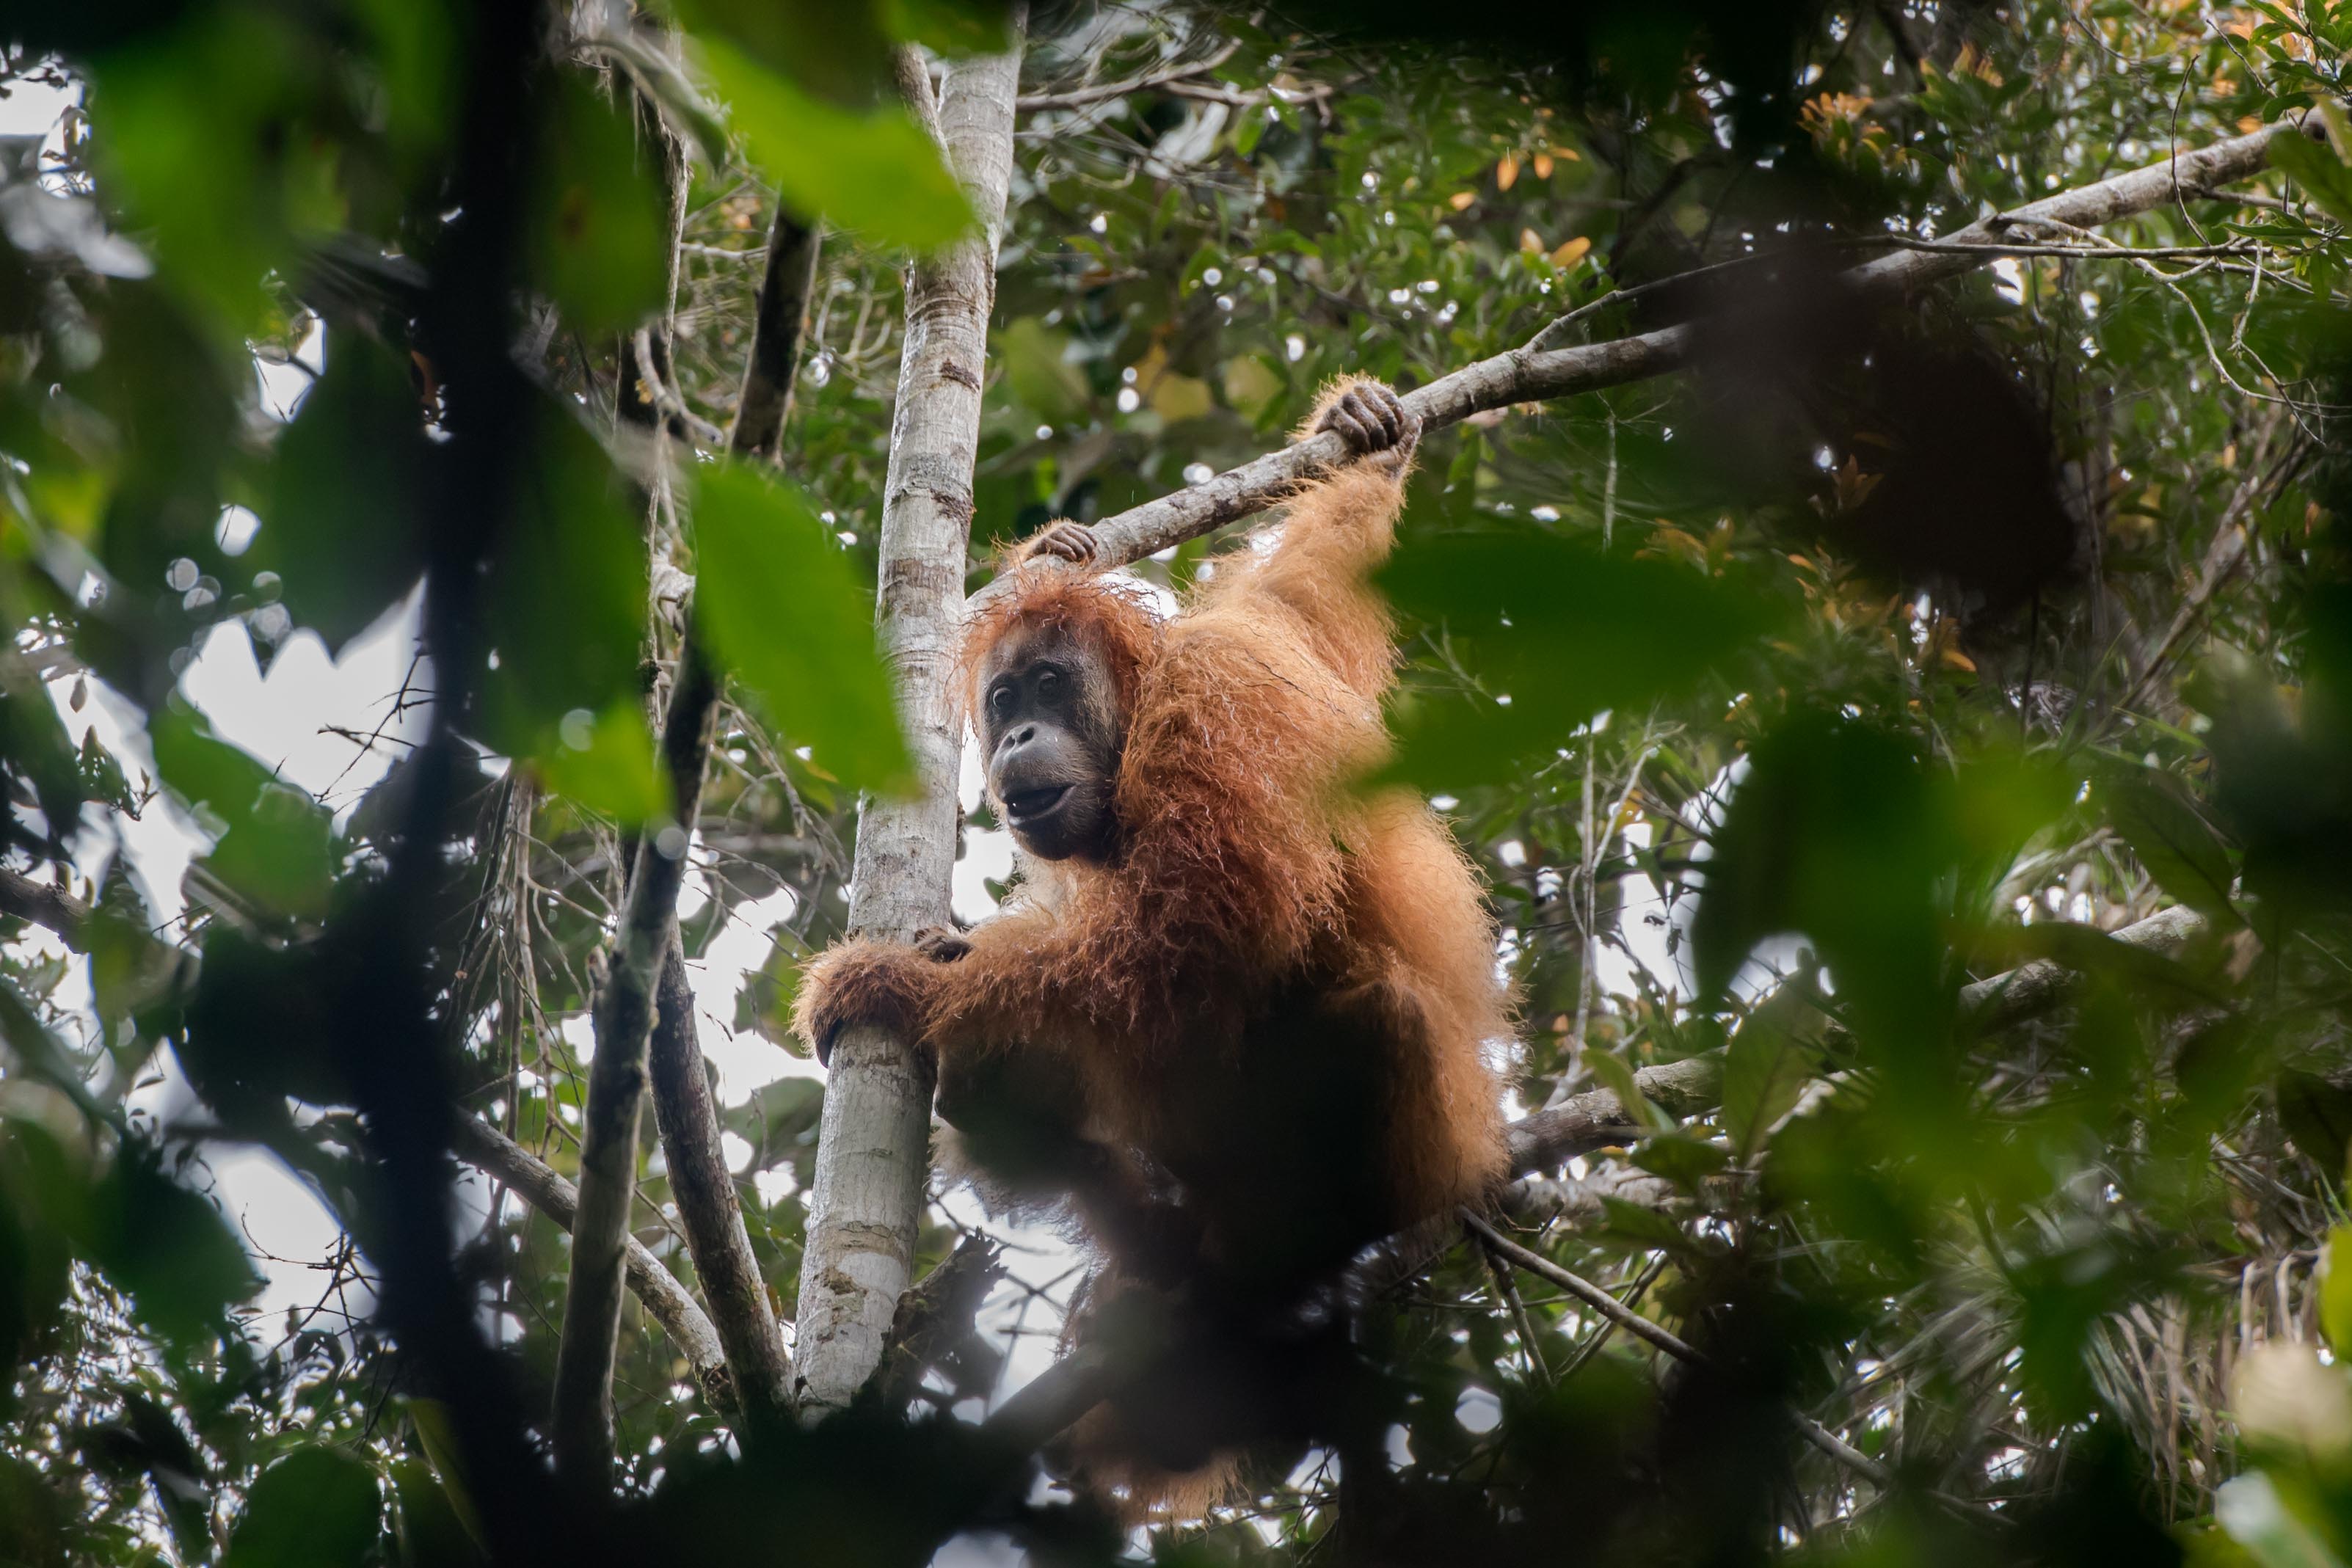 Tapanuli orangutans near Camp Mayang, Batang Toru forest, May 2019. 
[Aditya Sumitra for Image Dynamics/Mighty Earth]